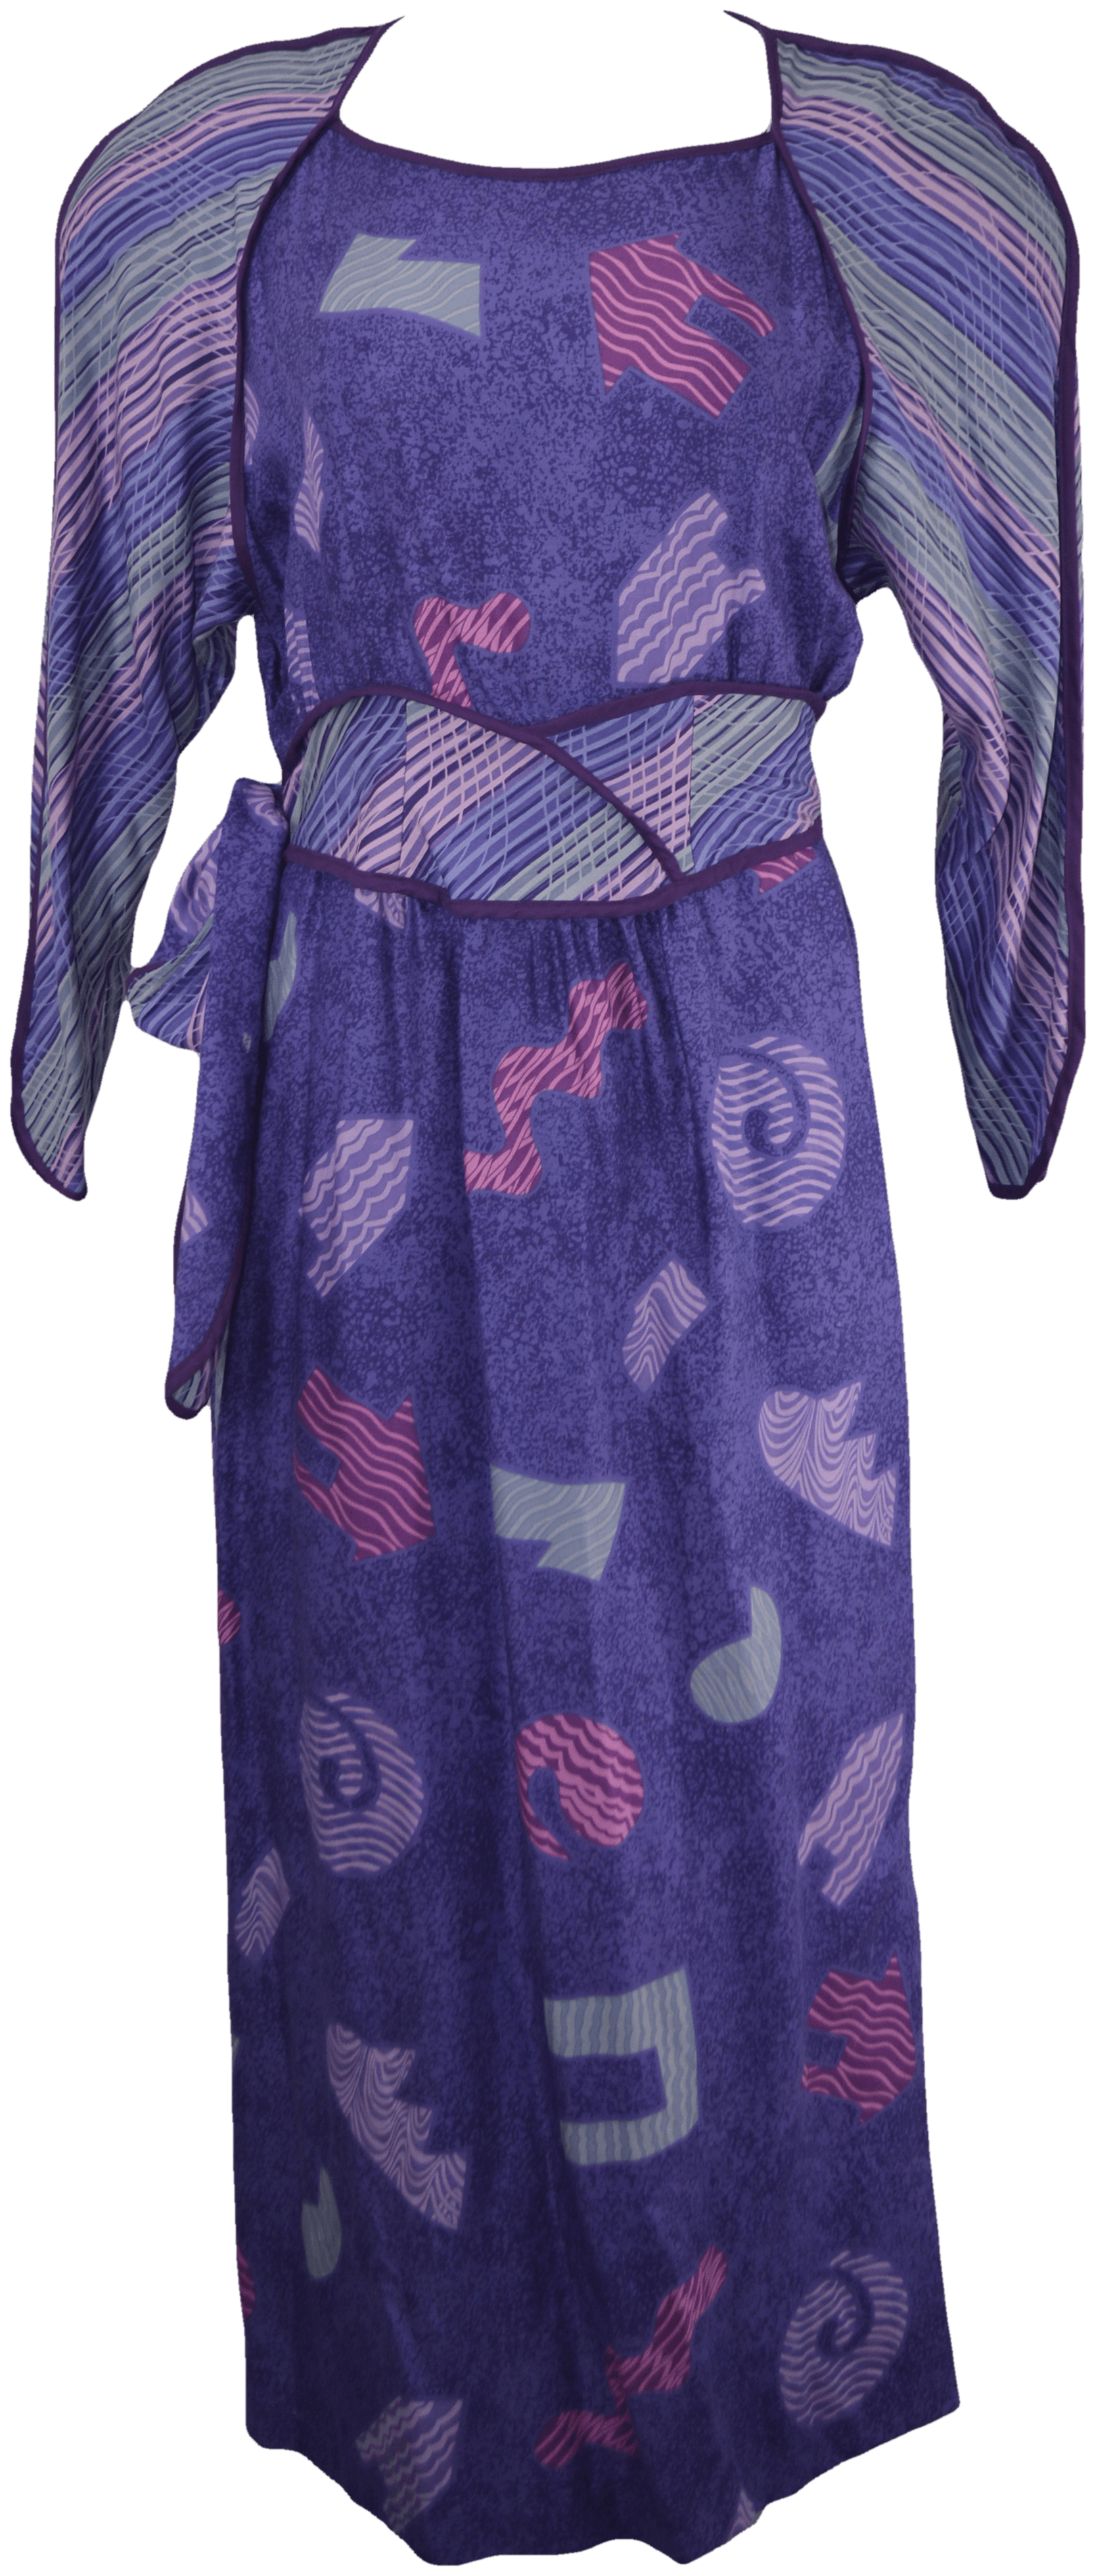 purple patterned dress